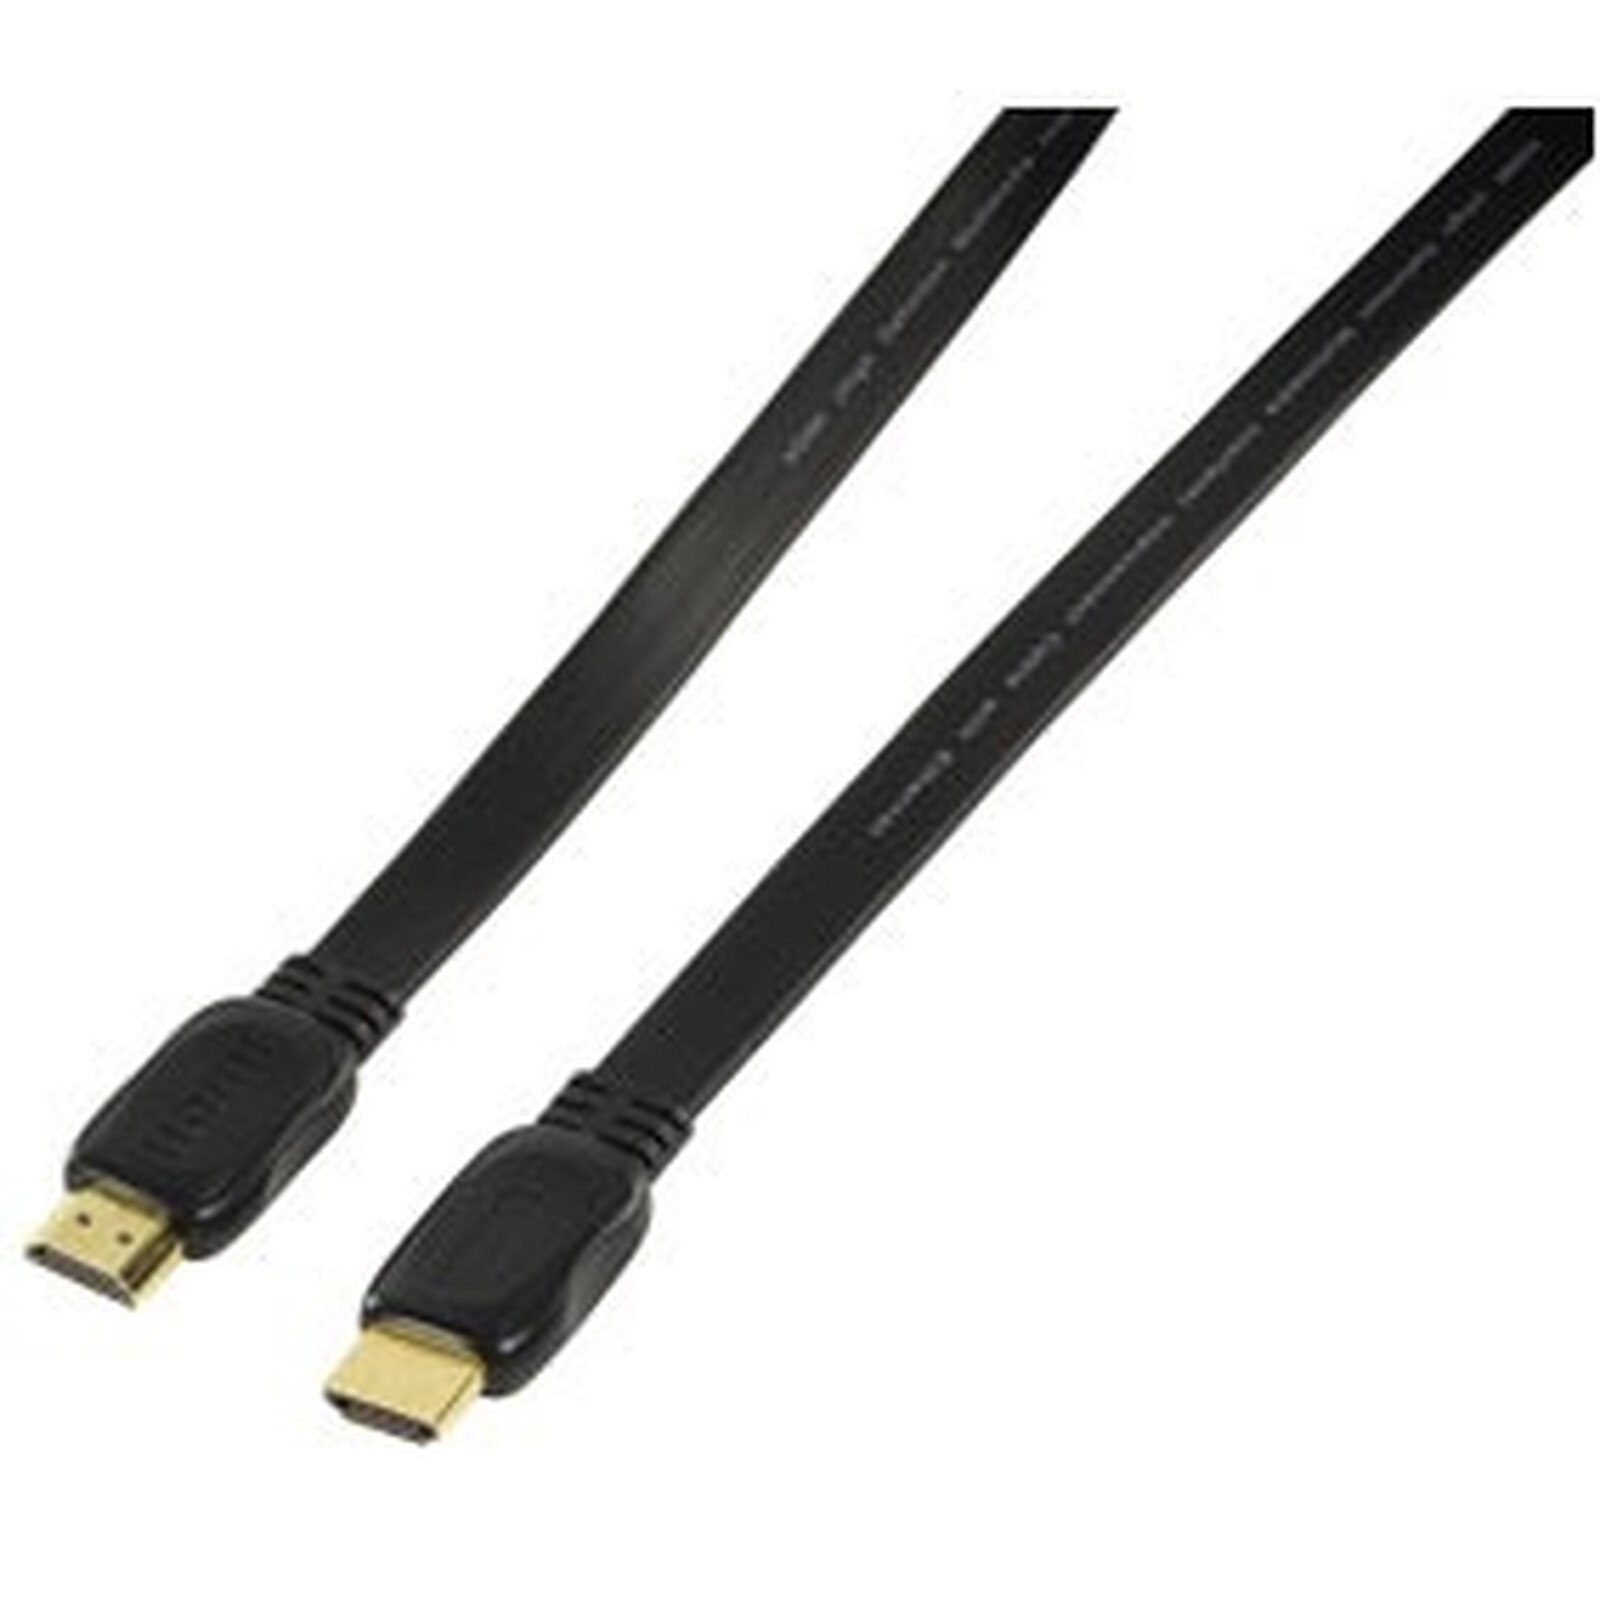 Cable alargador HDMI v1.4 negro de 3 metros, macho - hembra